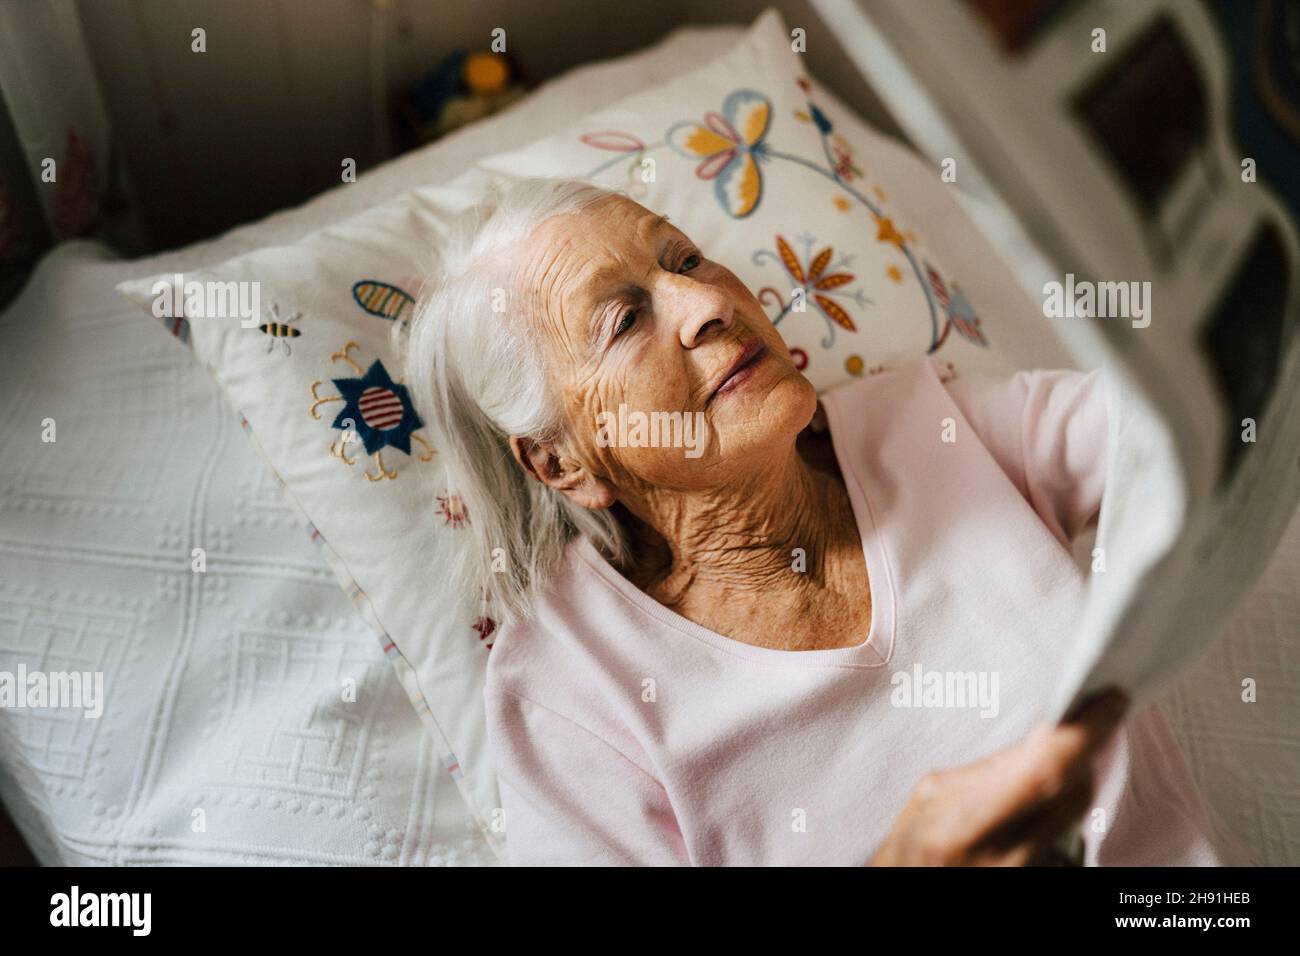 Vue en grand angle de la femme âgée qui lit des journaux pendant qu'elle est allongée sur le lit Banque D'Images